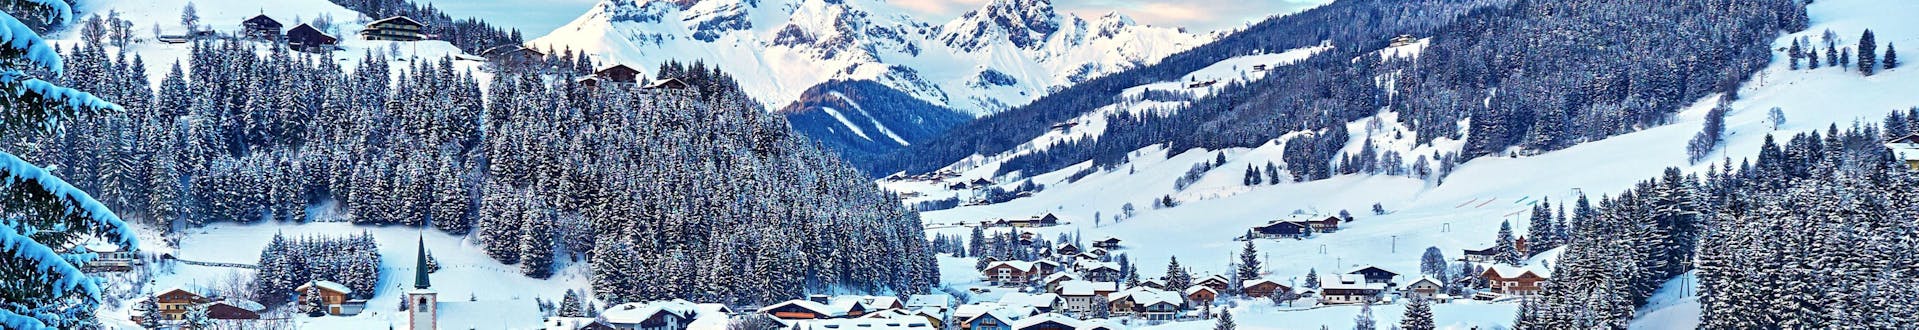 Ciudad de Filzmoos, Austria, cerca de las pistas donde se pueden reservar clases de esquí.